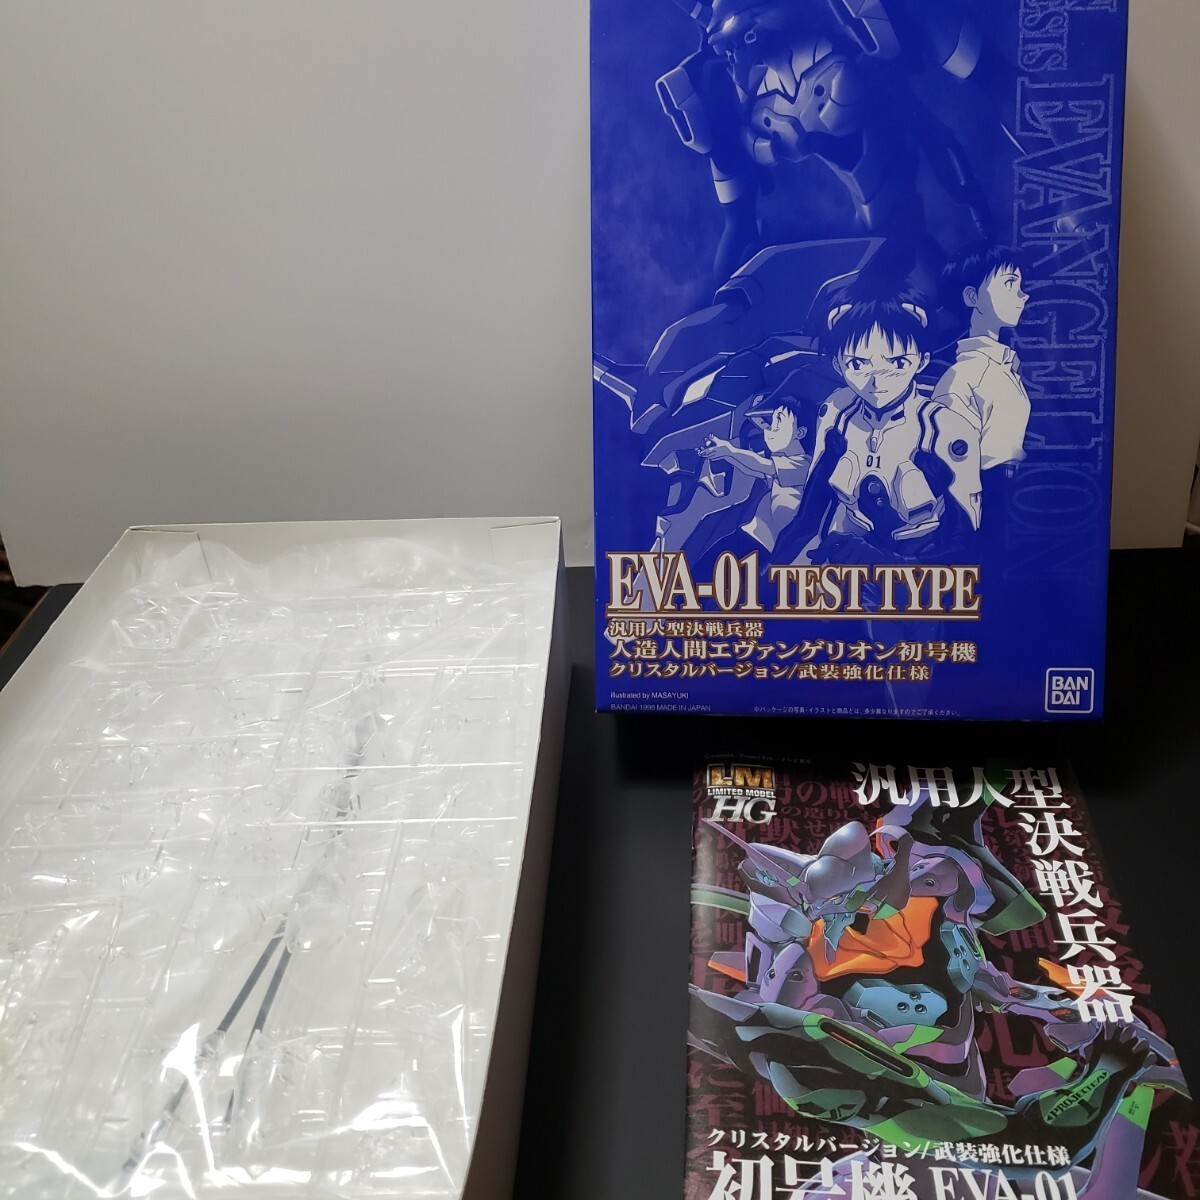  Neon Genesis Evangelion театр версия первый раз ограничение запись DVDBOX. не собран пластиковая модель GAINAX.. превосходящий Akira retro подлинная вещь не продается KADOKAWA Kadokawa Shoten 